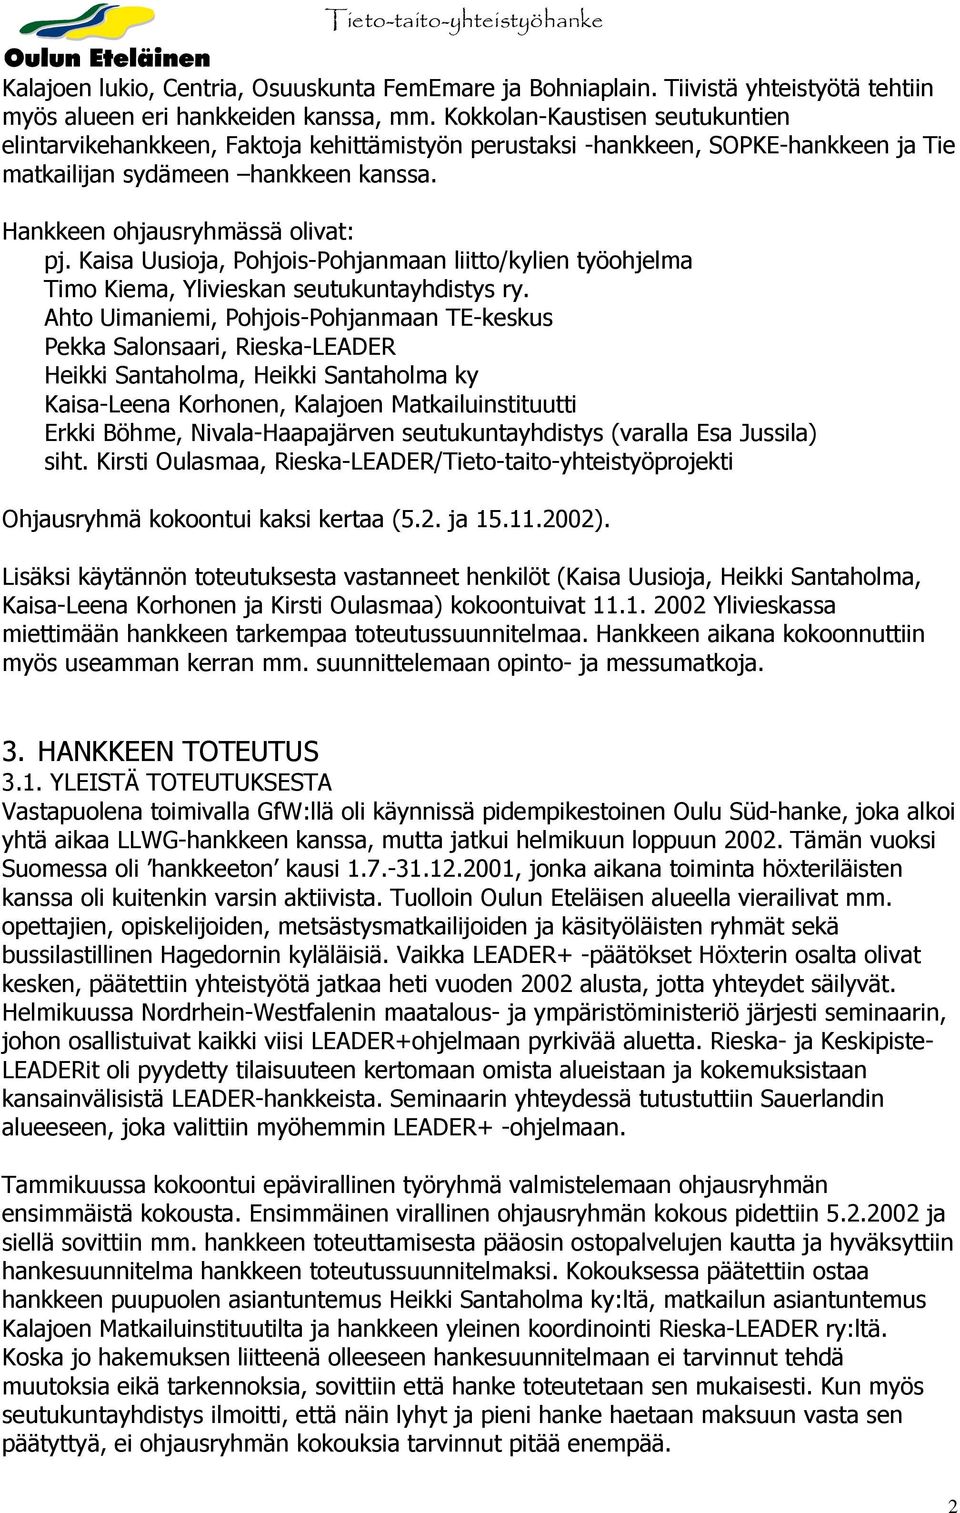 Kaisa Uusioja, Pohjois-Pohjanmaan liitto/kylien työohjelma Timo Kiema, Ylivieskan seutukuntayhdistys ry.